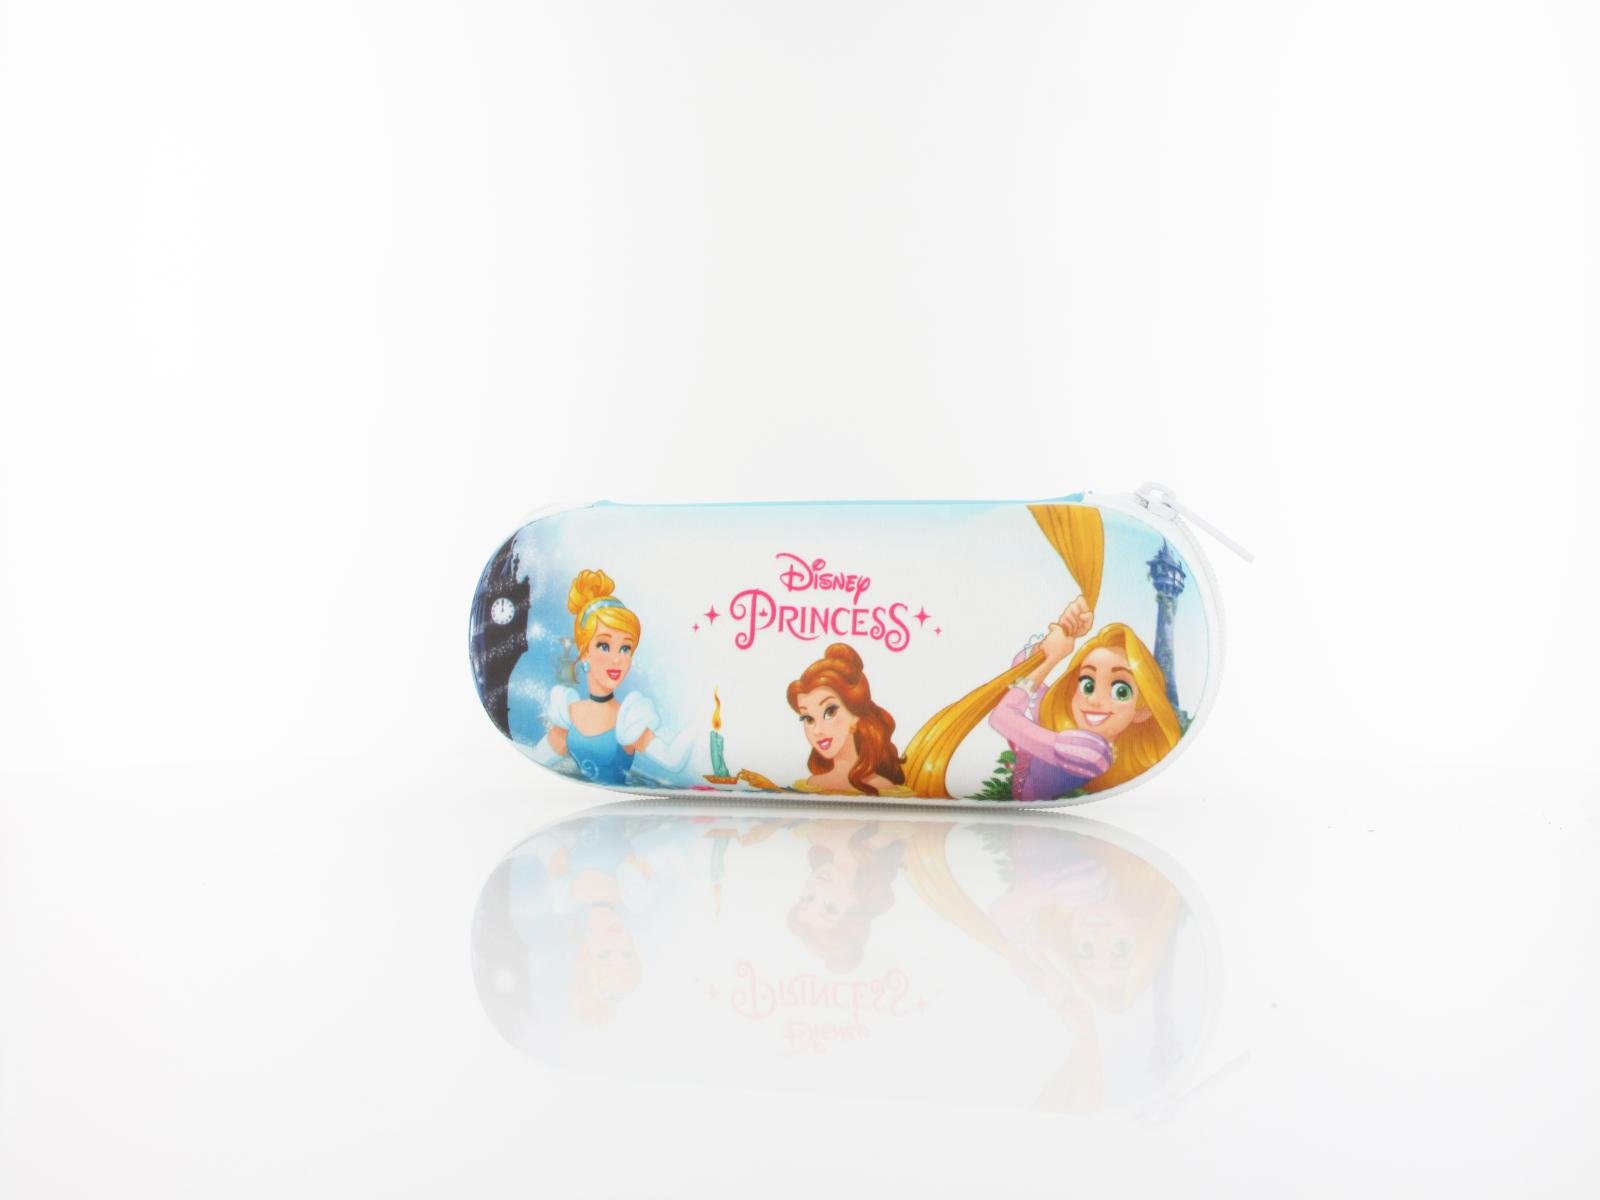 Disney Princess | DP AA185 D36 48 | türkis